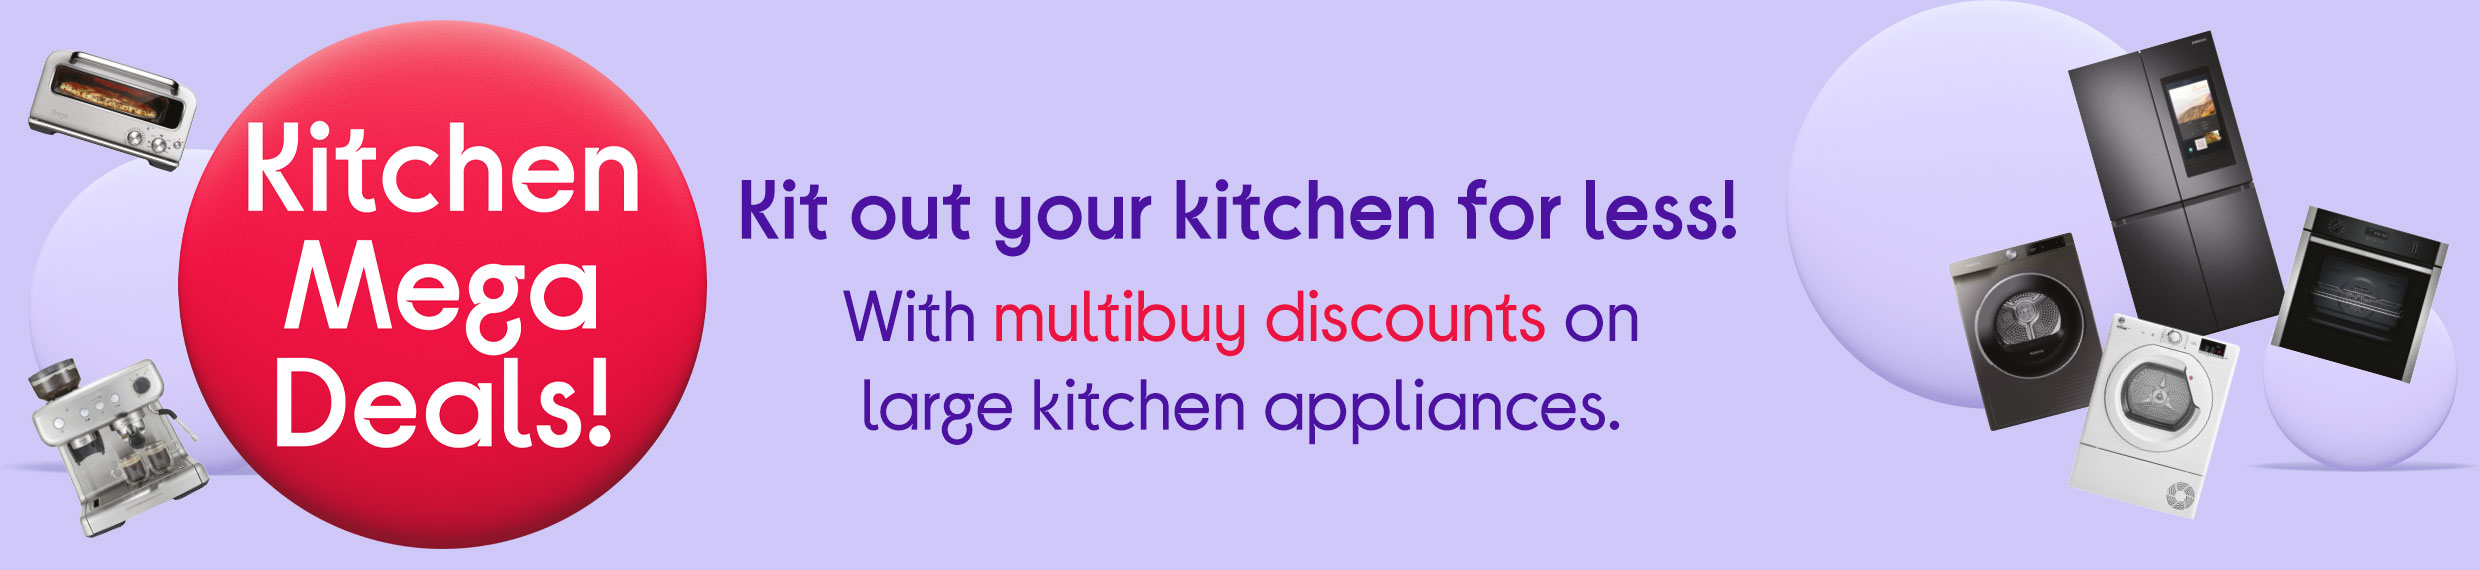 Kitchen Appliances Deals at Currys